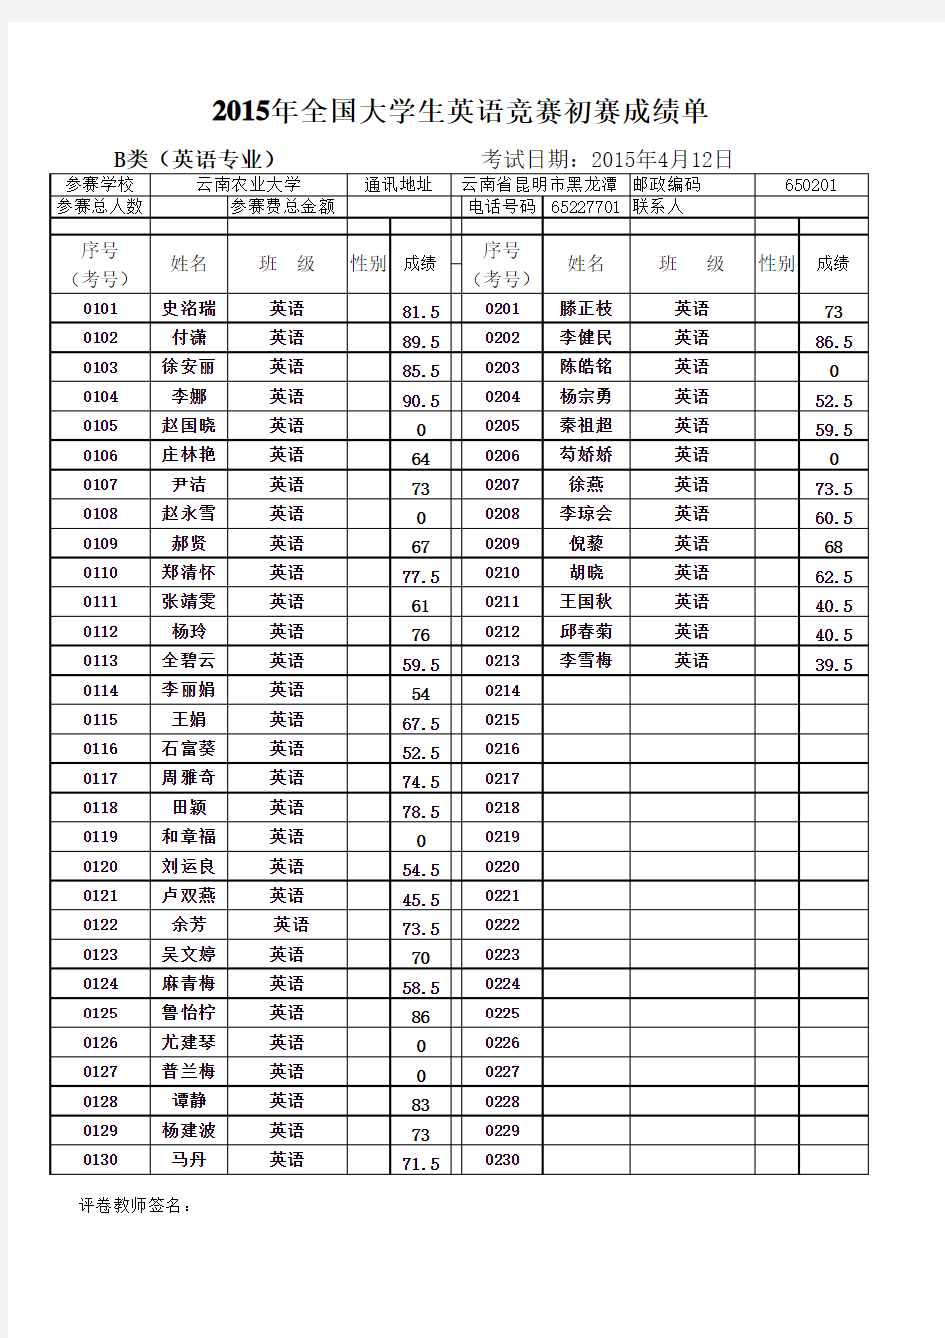 2015年4月云南农业大学全国大学生英语竞赛初赛成绩单(汇总)